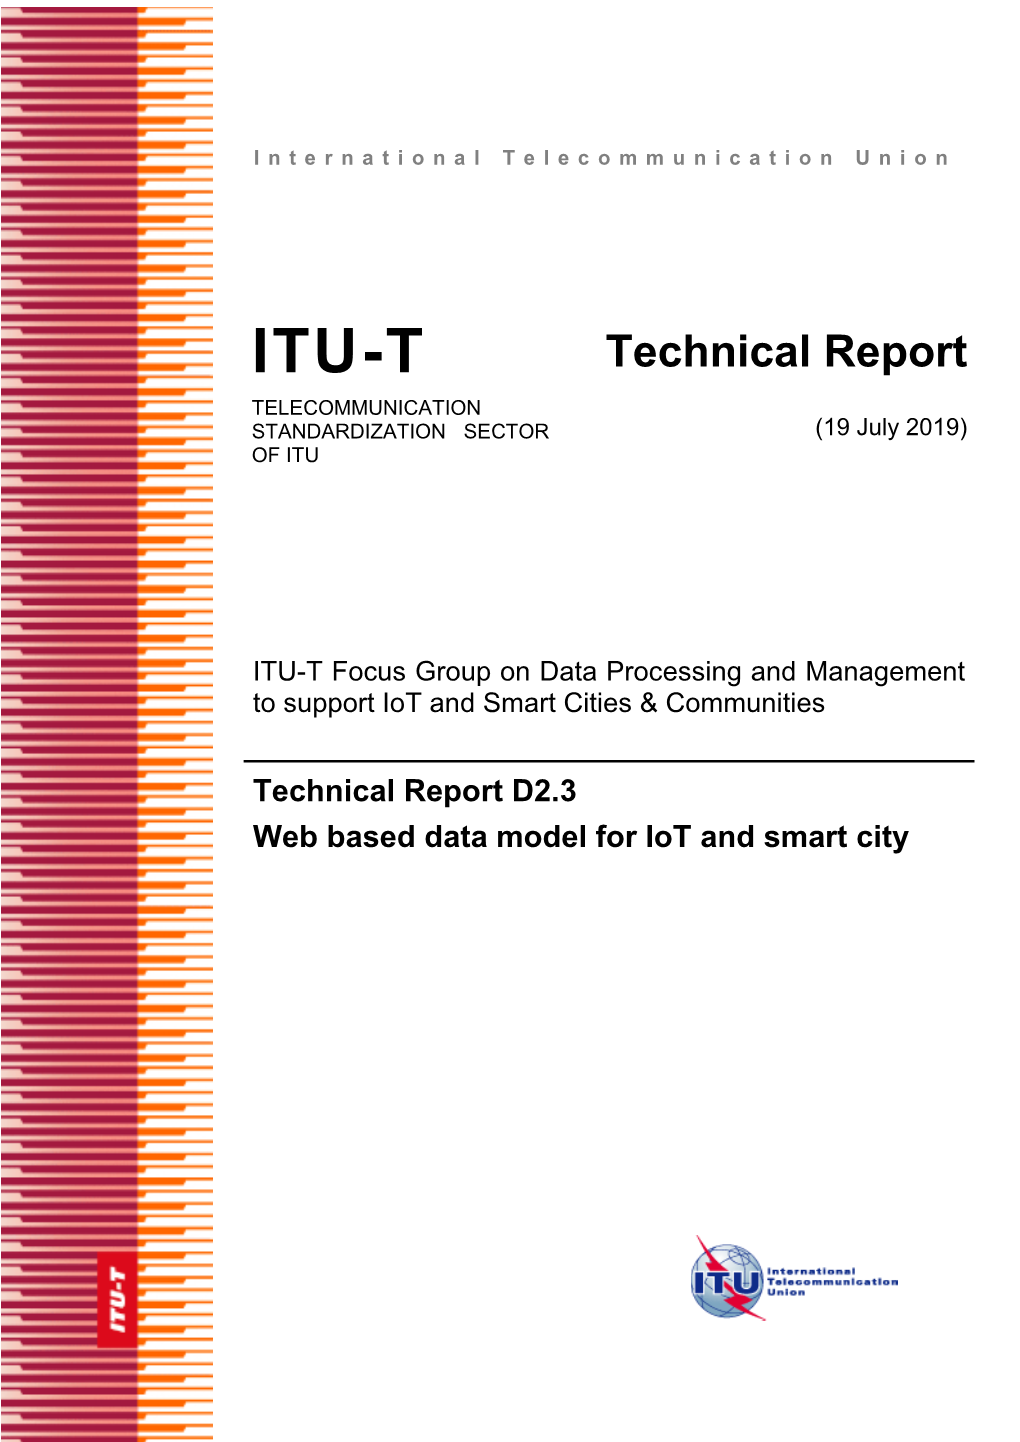 Technical Report TELECOMMUNICATION STANDARDIZATION SECTOR (19 July 2019) of ITU